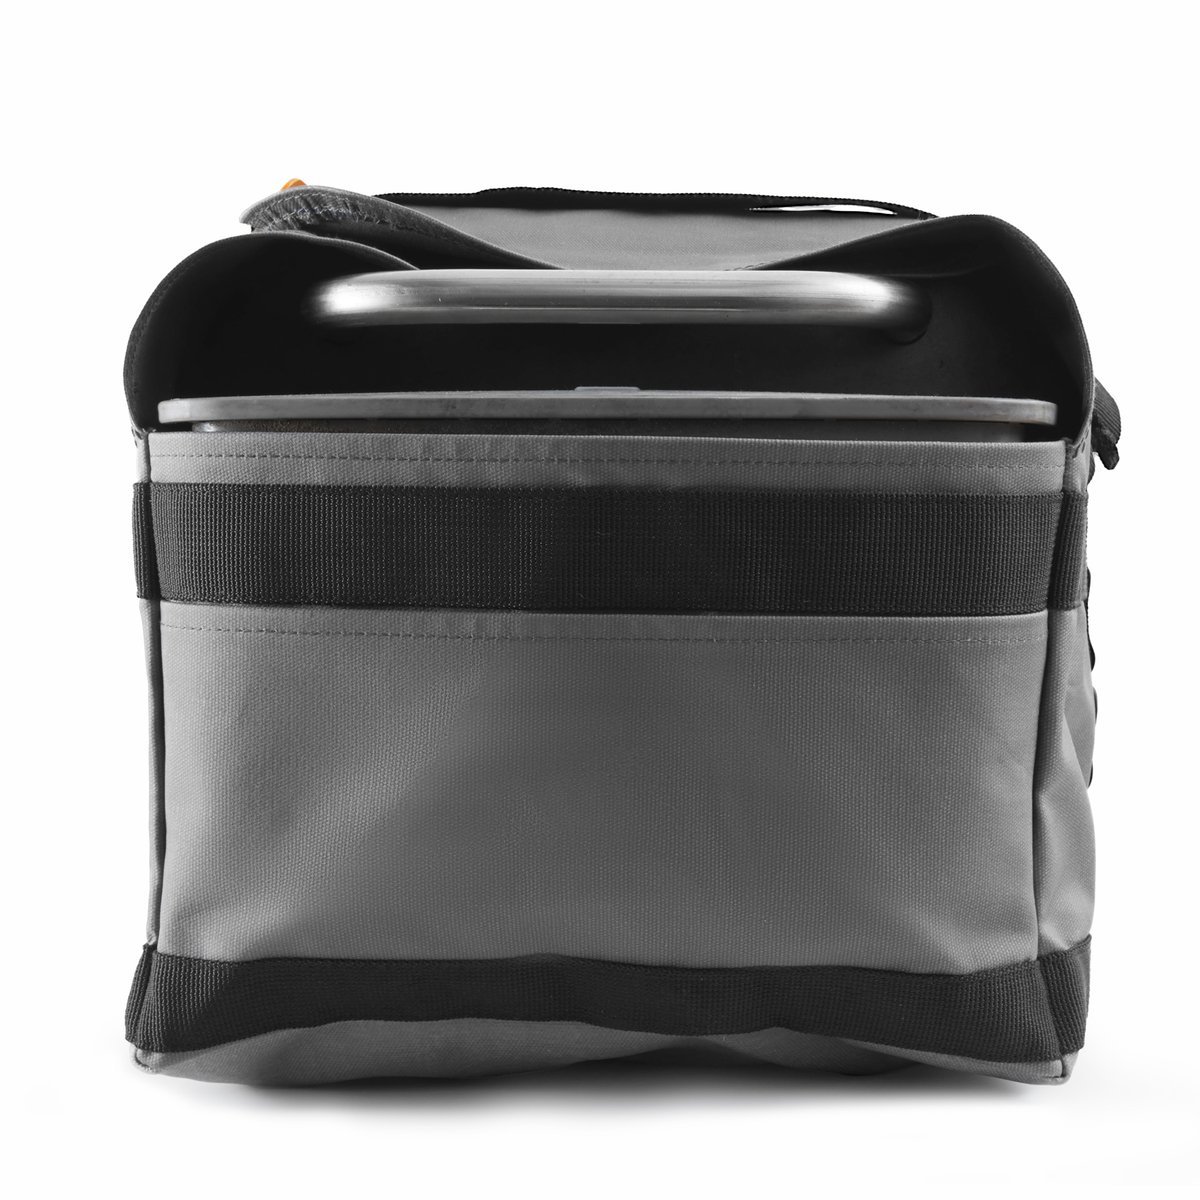 BioLite FirePit Carry Bag Protective Travel Case